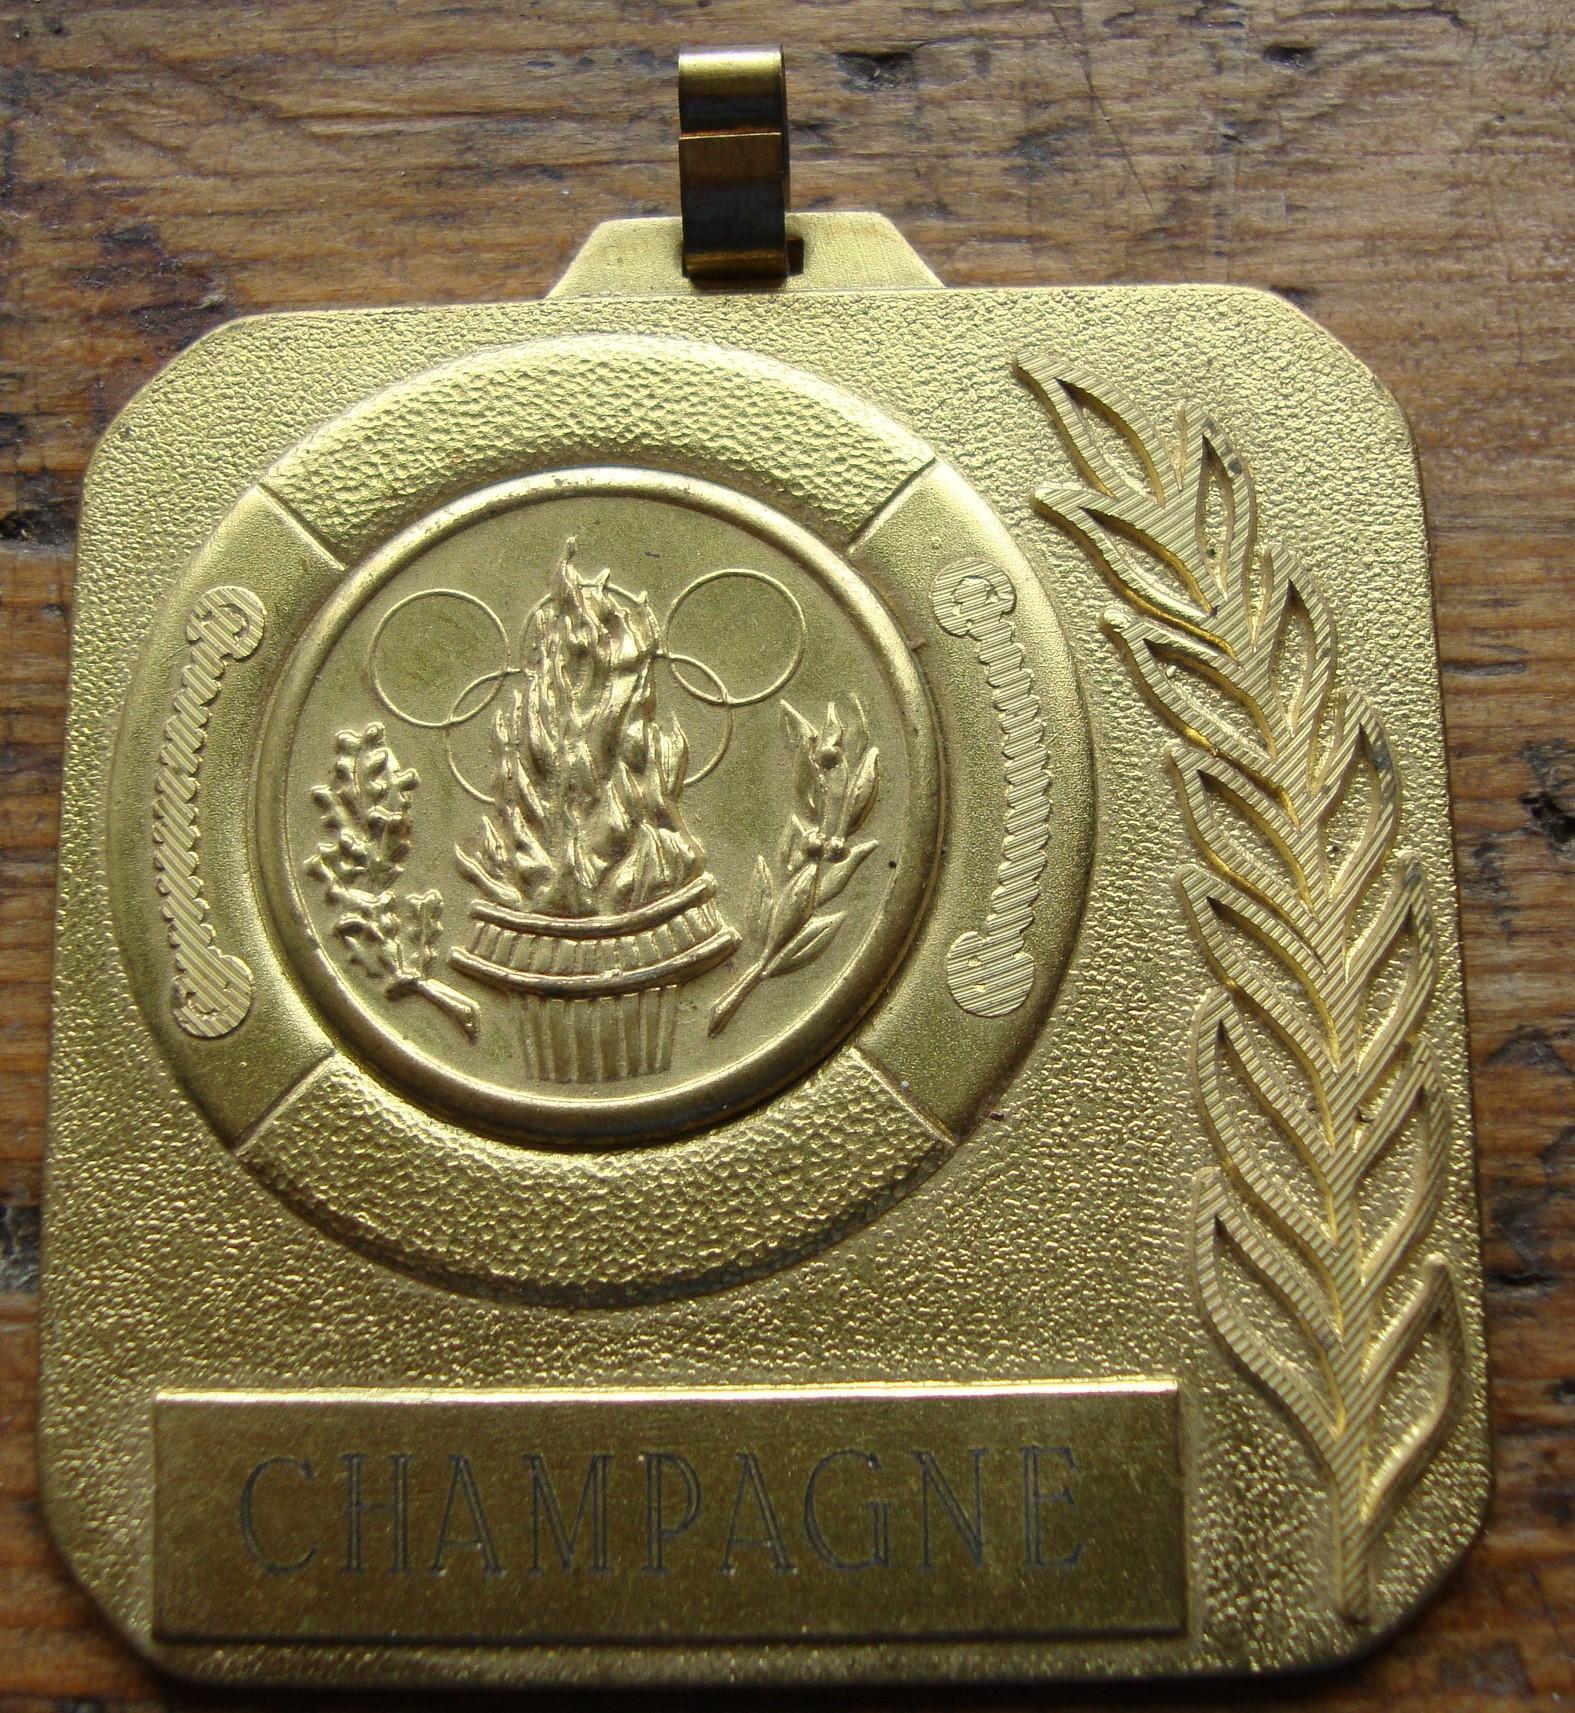 troc de troc médaille de tir champagne" cht chalons 1987" image 0